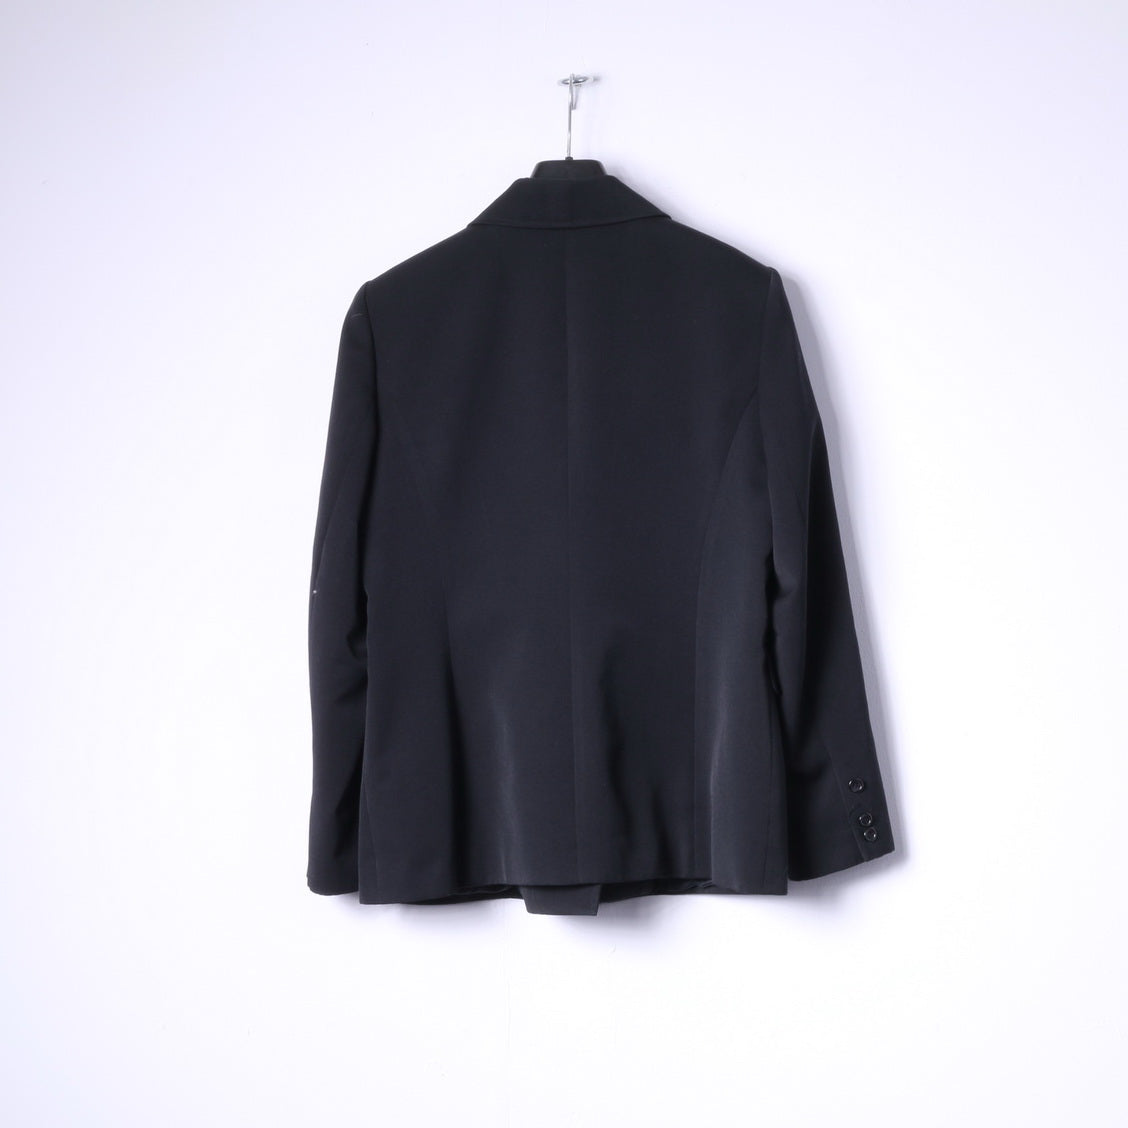 EPISODE Women 44 16 Blazer Black Wool Blend Double Breasted Jacket